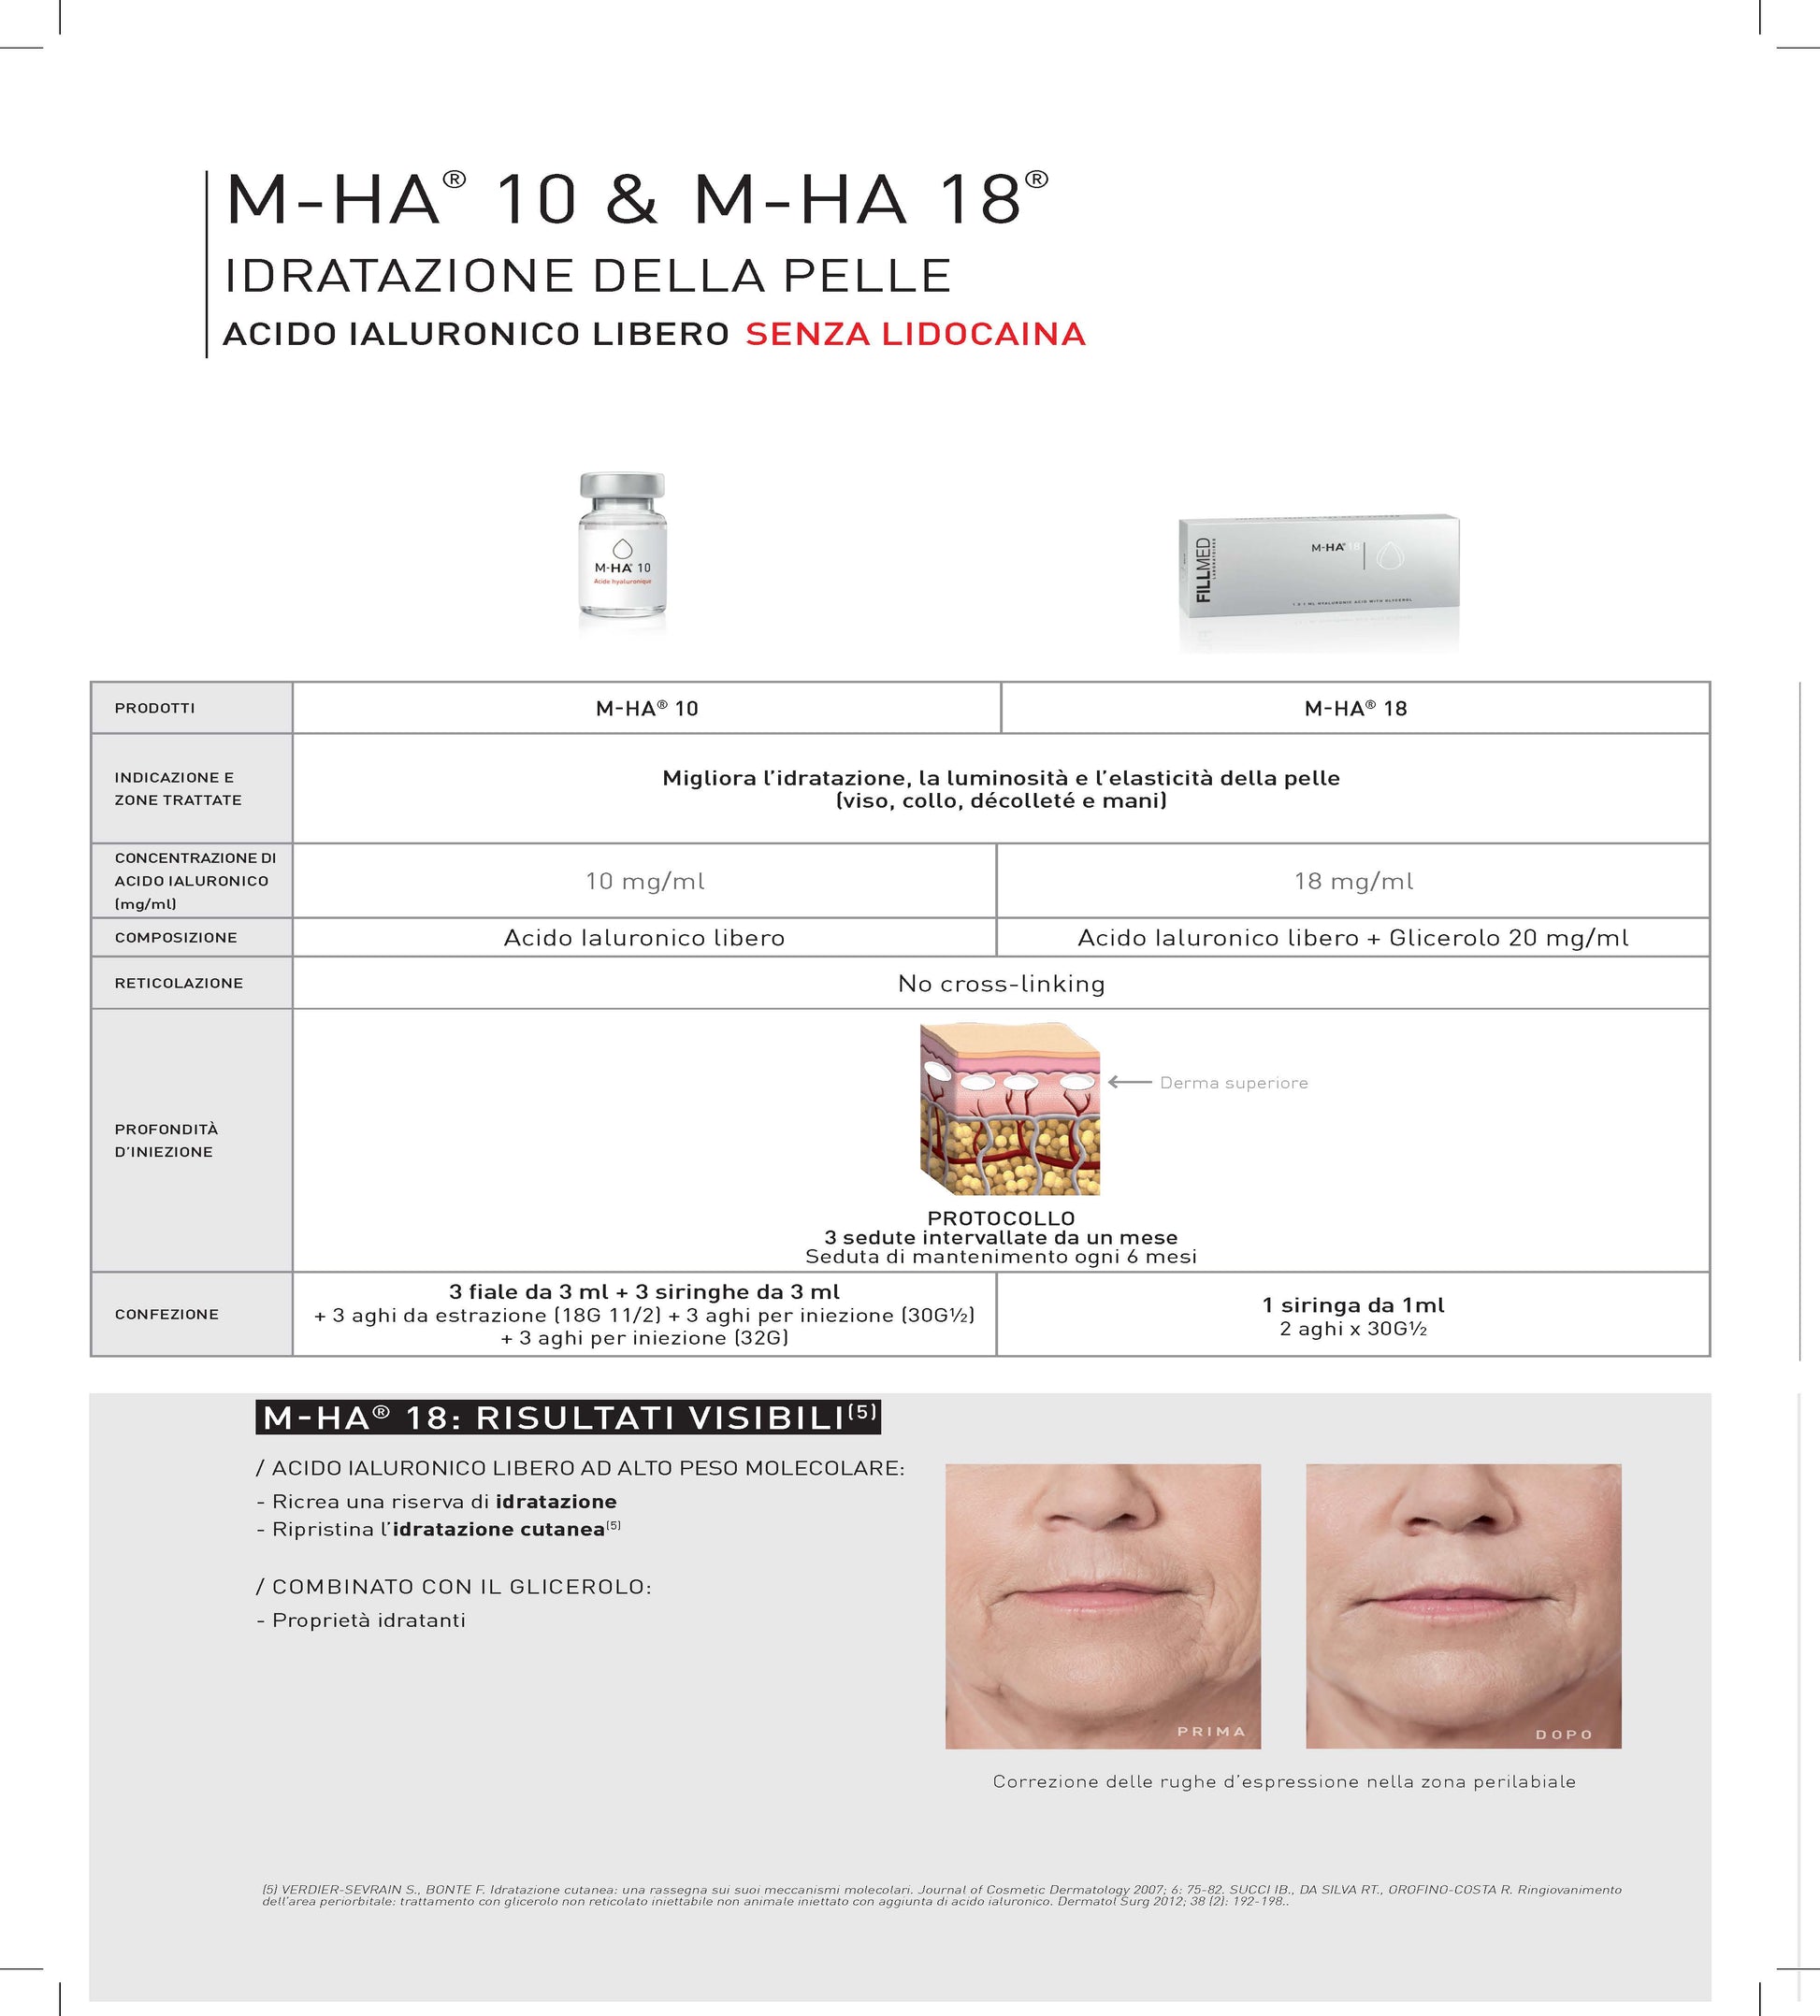 Fillmed M-HA 18
Contiene 1 siringa da 1ml(18mg/mL).
Indicato per migliorare l'idratazione del viso, la luminosità e l'elasticità della pelle.
Zone di applicazione: viso, collo, décolleté e mani.
Profondità di iniezione: derma superiore.